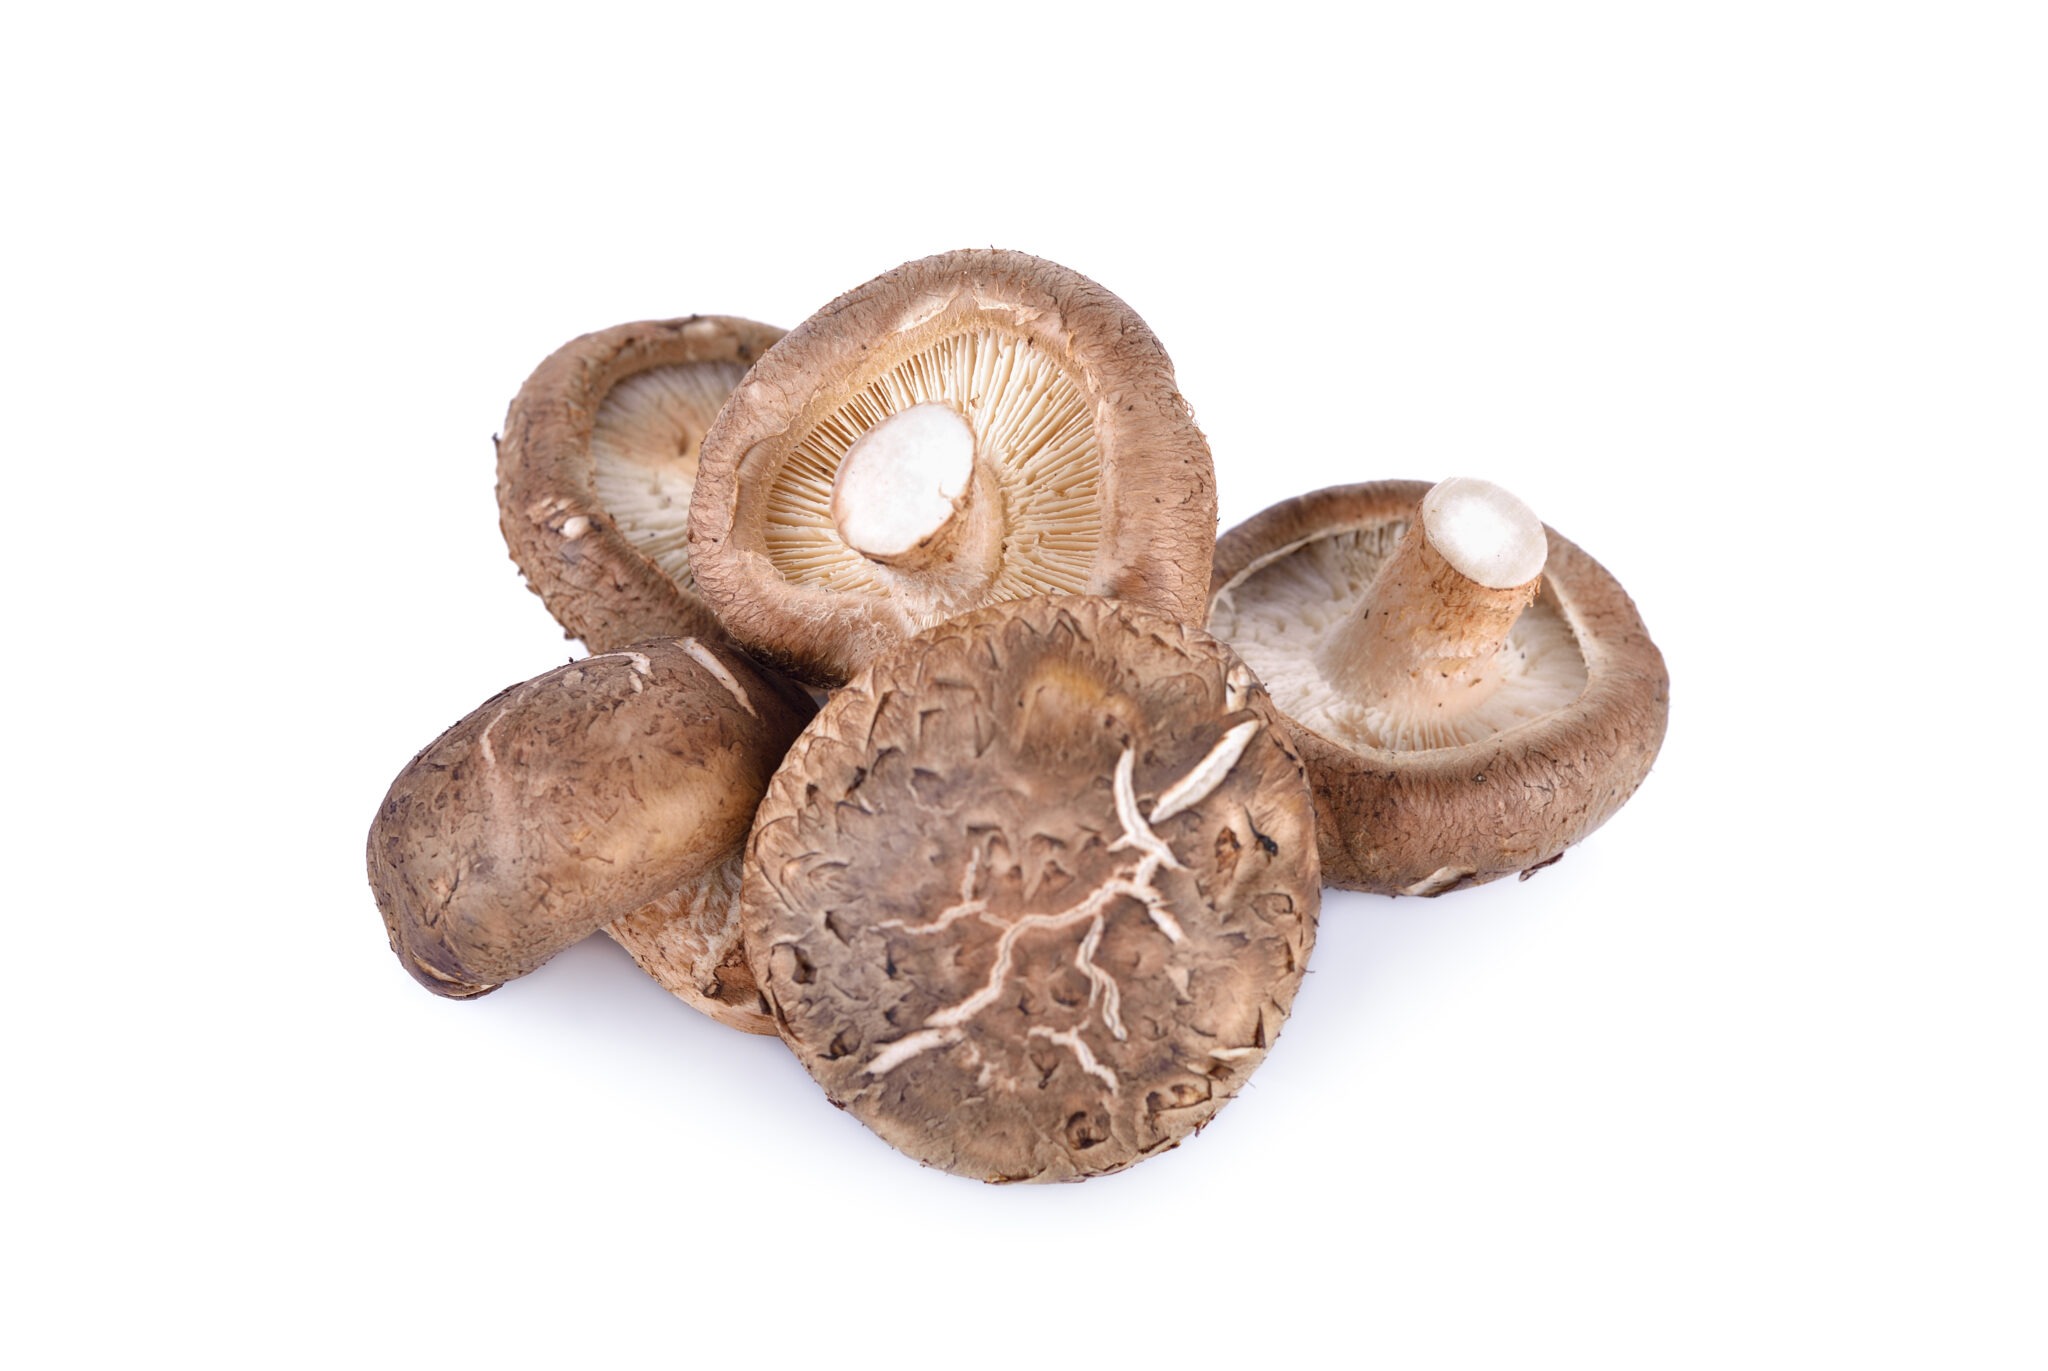 Shiitake mushroom health benefits